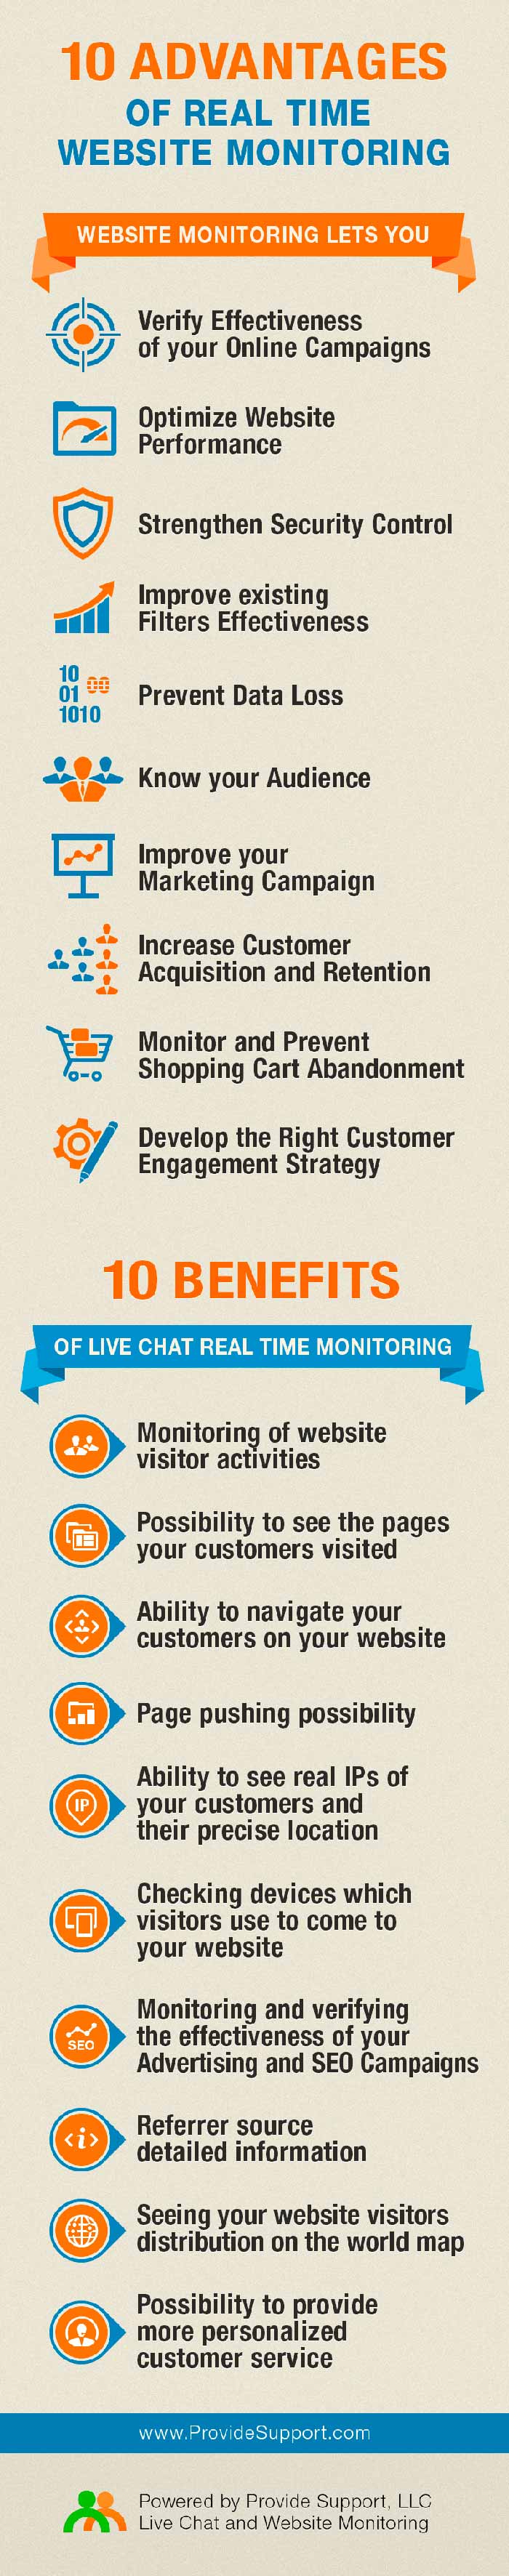 Infografia sobre las 10 ventajas de monitorizar una web en tiempo real